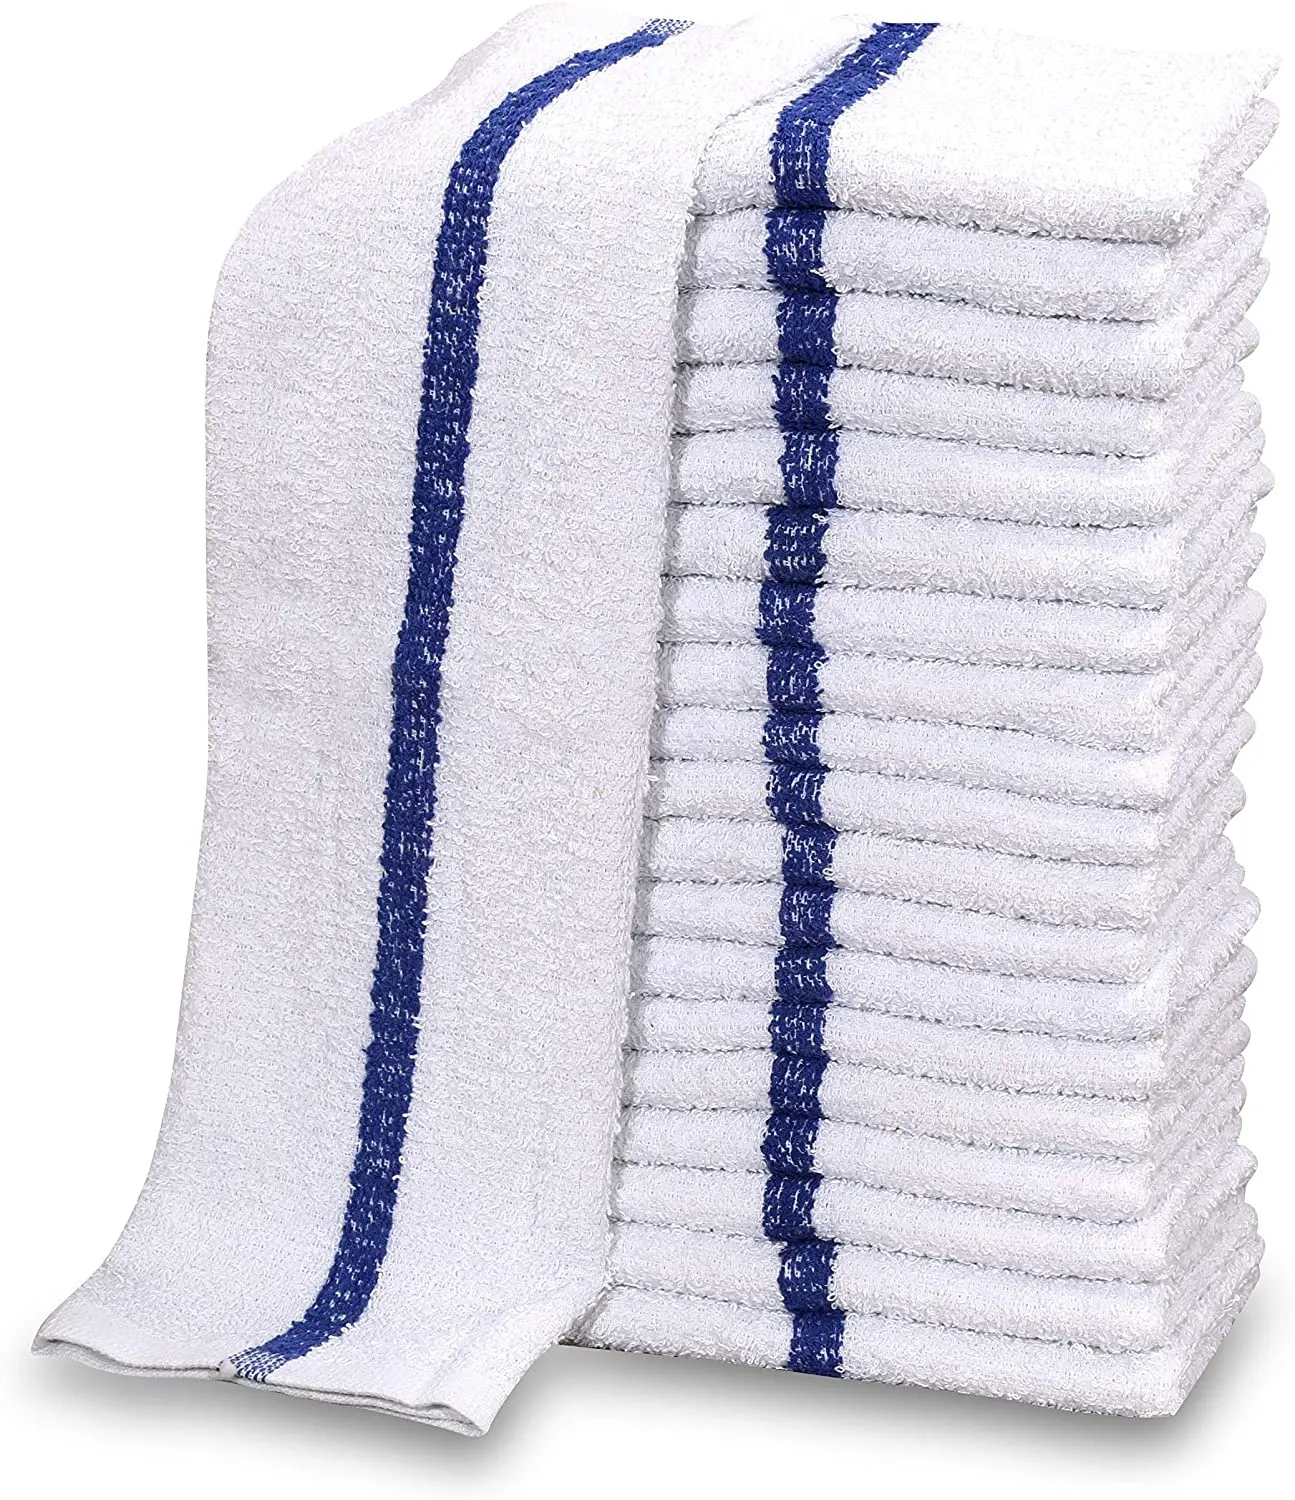 Bar asciugamani: bar mop asciugamani e ristorante asciugamani in massa